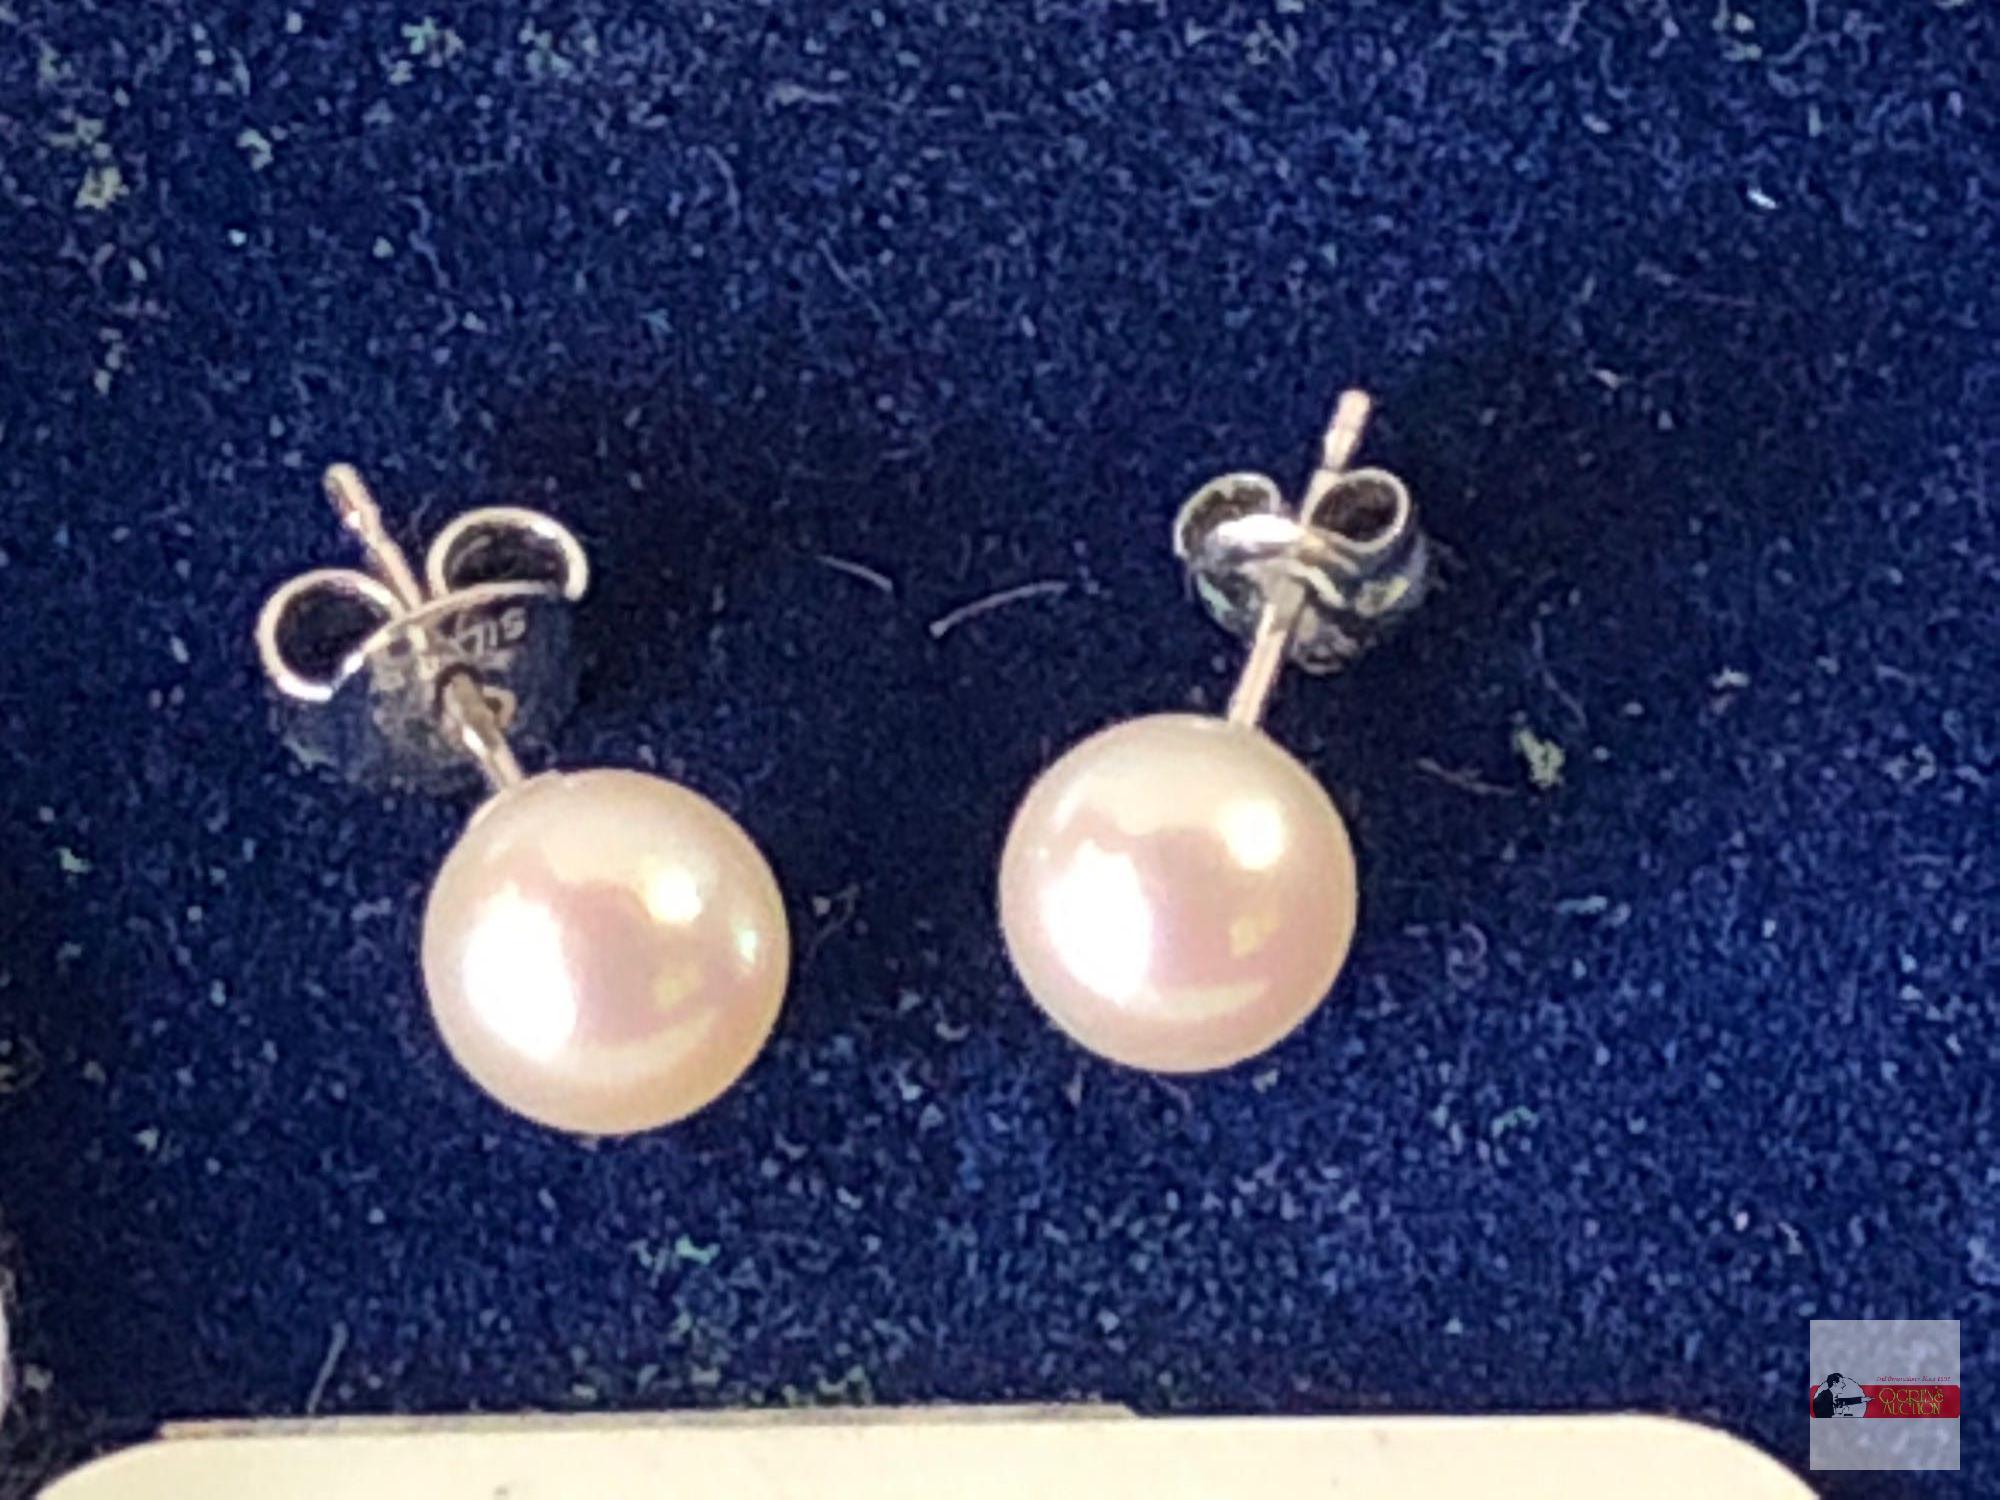 Jewelry - Earrings - P 900 platinum stud pearl earrings